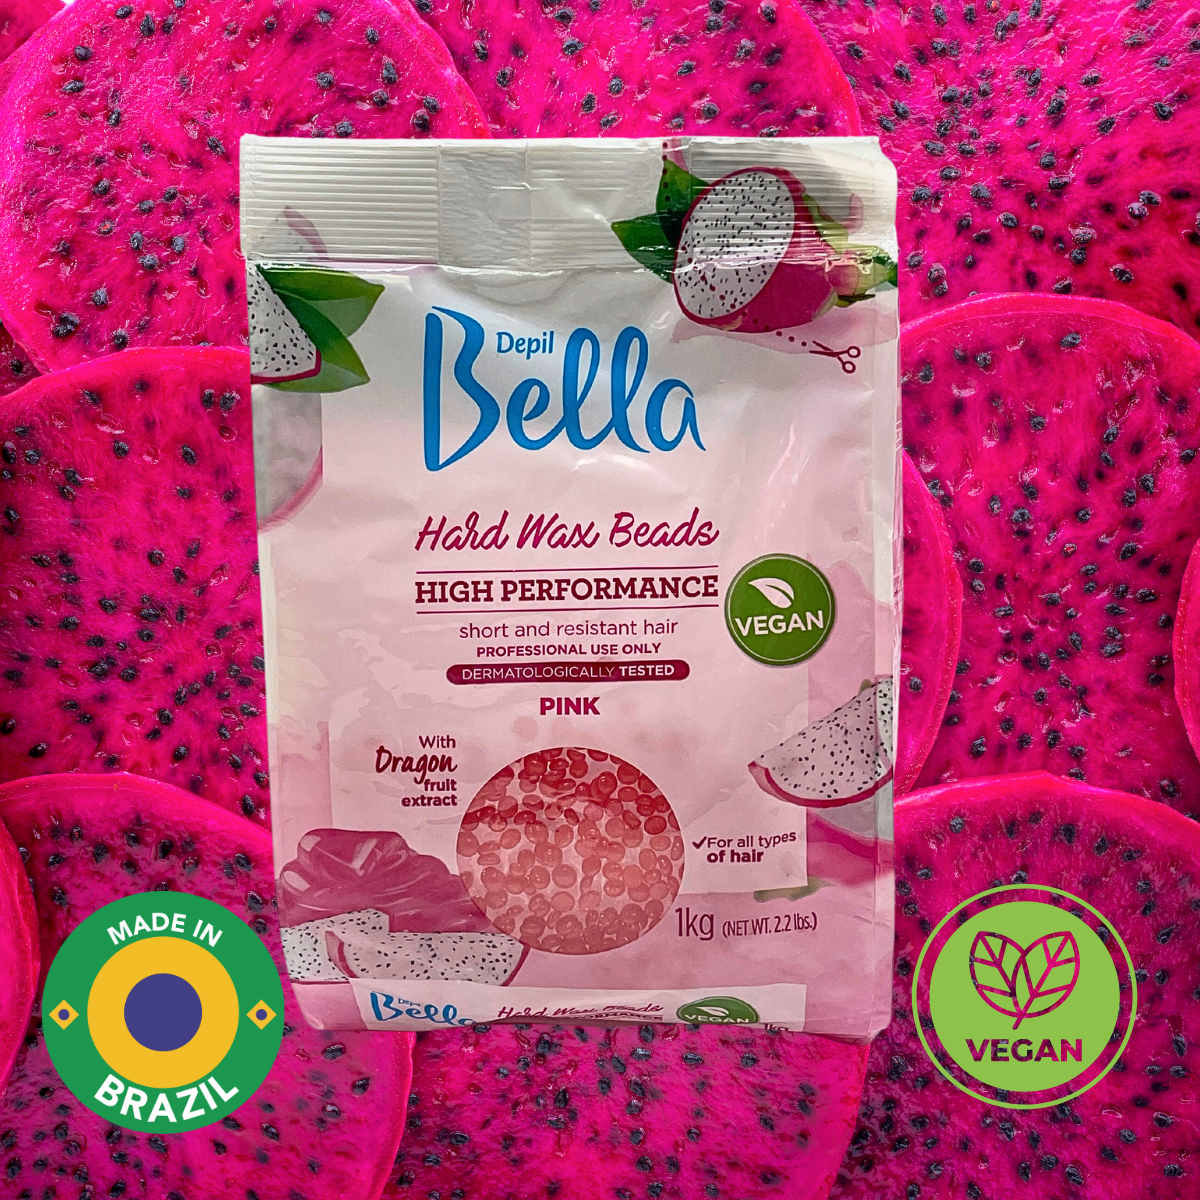 Depil Bella Pink Pitaya Confeti Perlas de cera dura - Depilación de alto rendimiento, Vegano 2..2 lbs